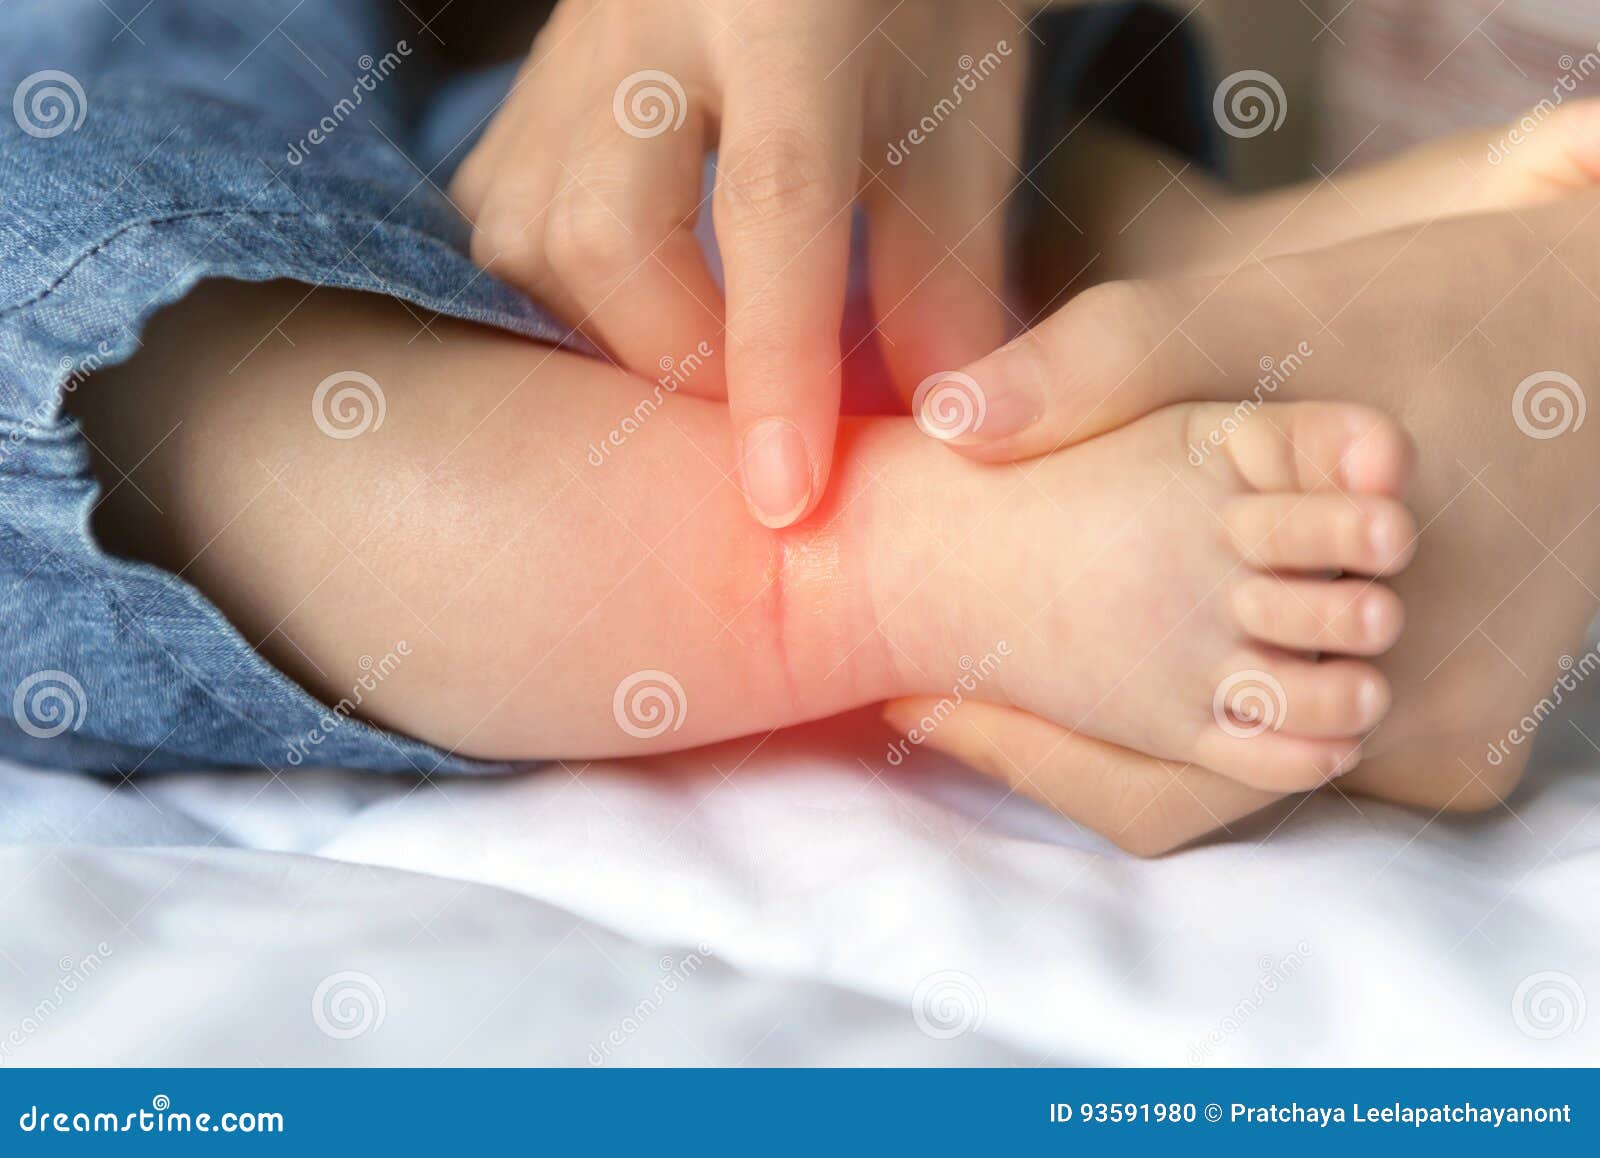 Атопический дерматит на ногах у ребенка